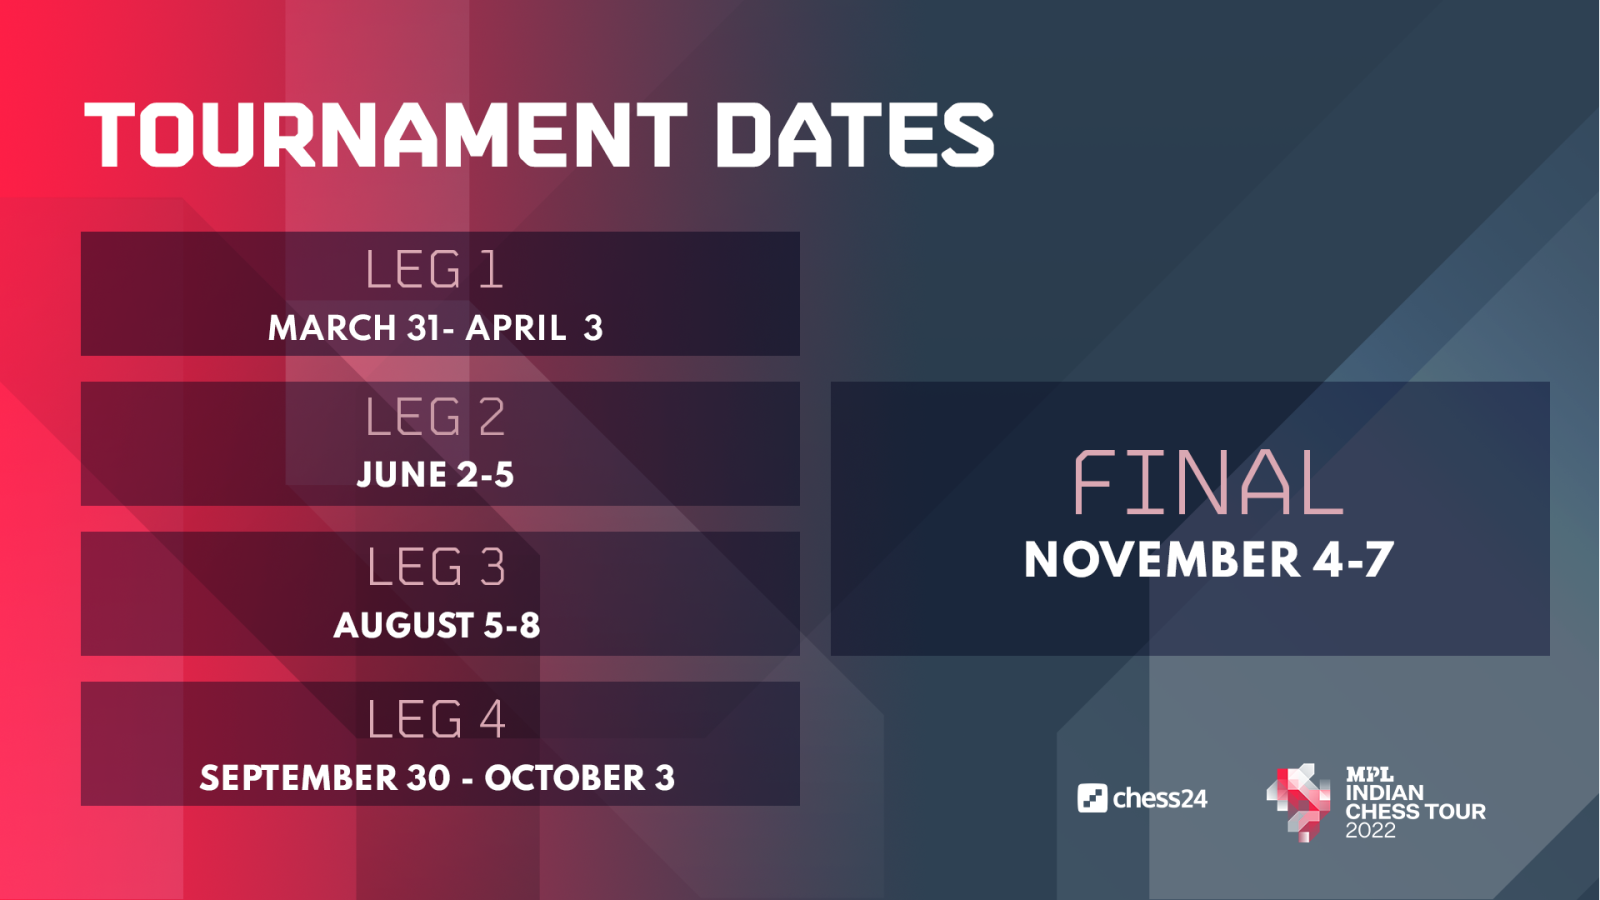 Online Tournaments: October 3, 2022